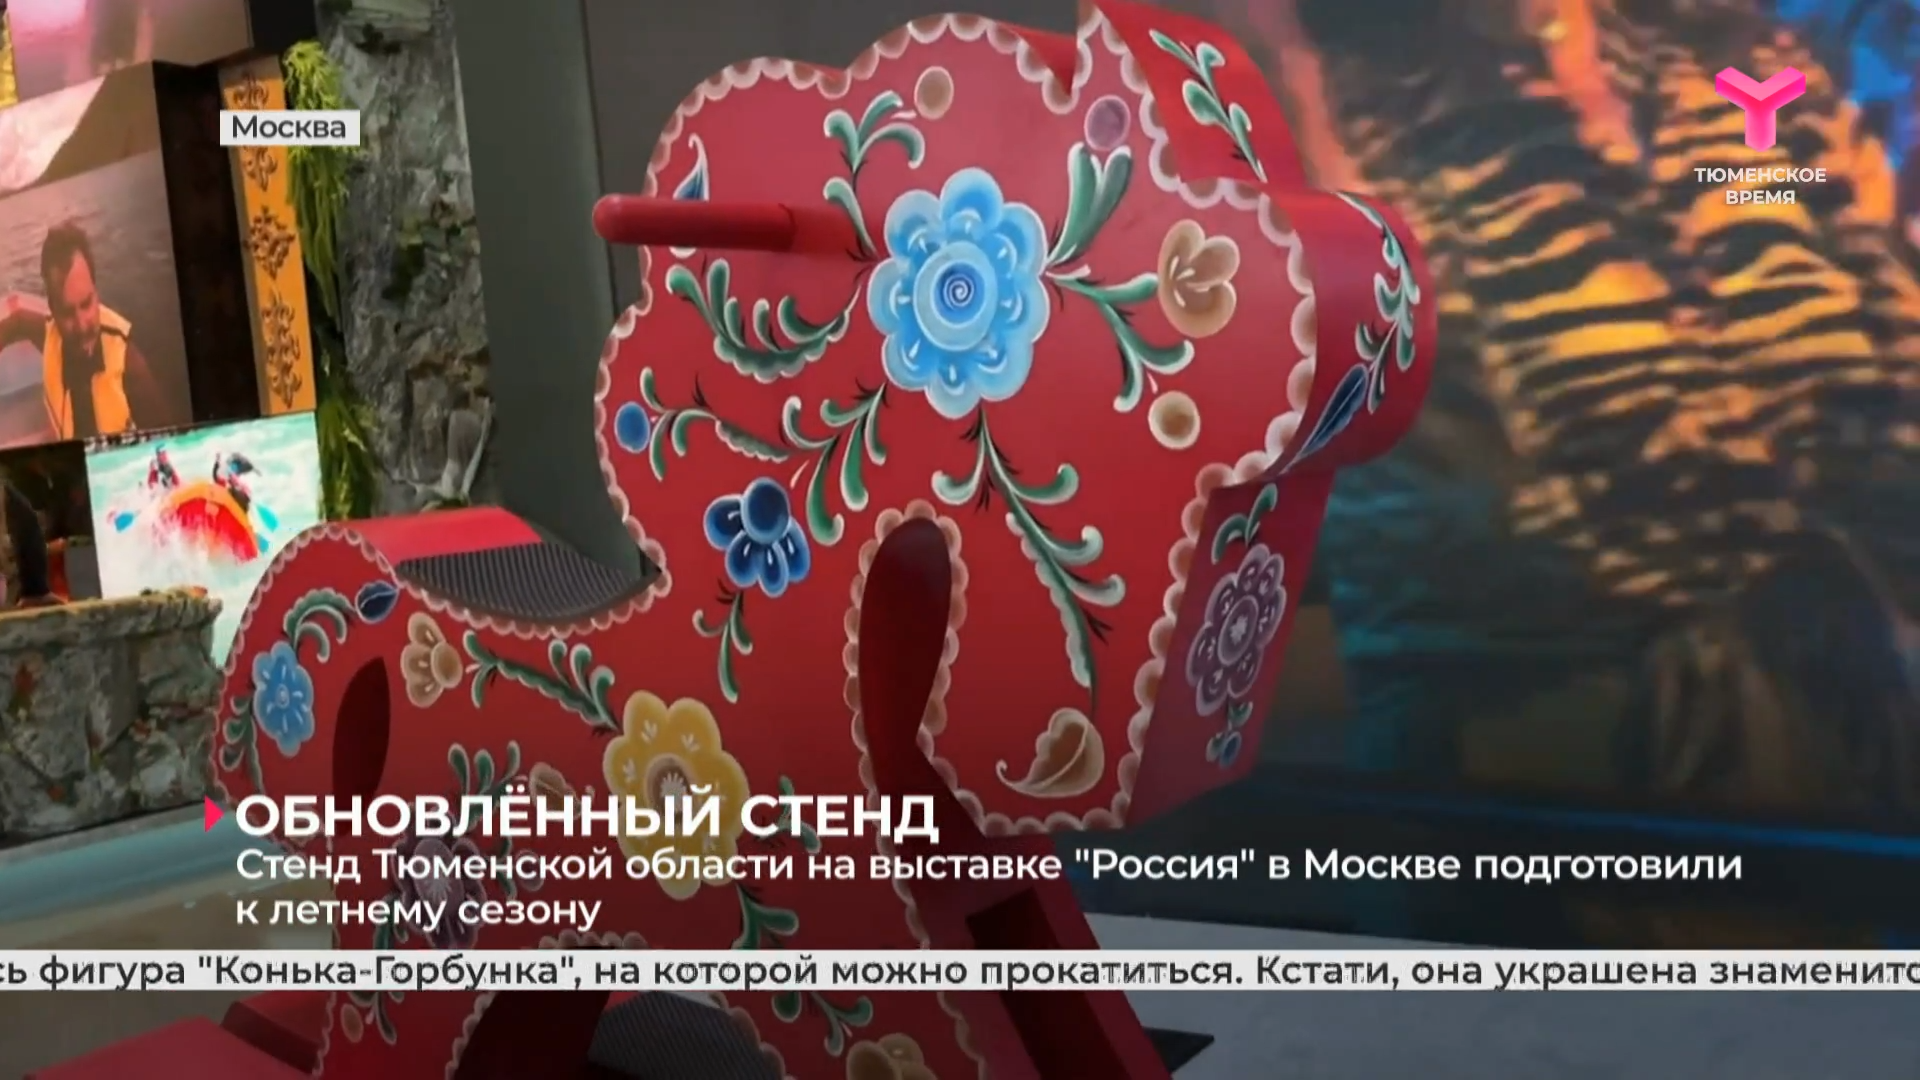 Стенд Тюменской области на выставке "Россия" в Москве подготовили к летнему сезону